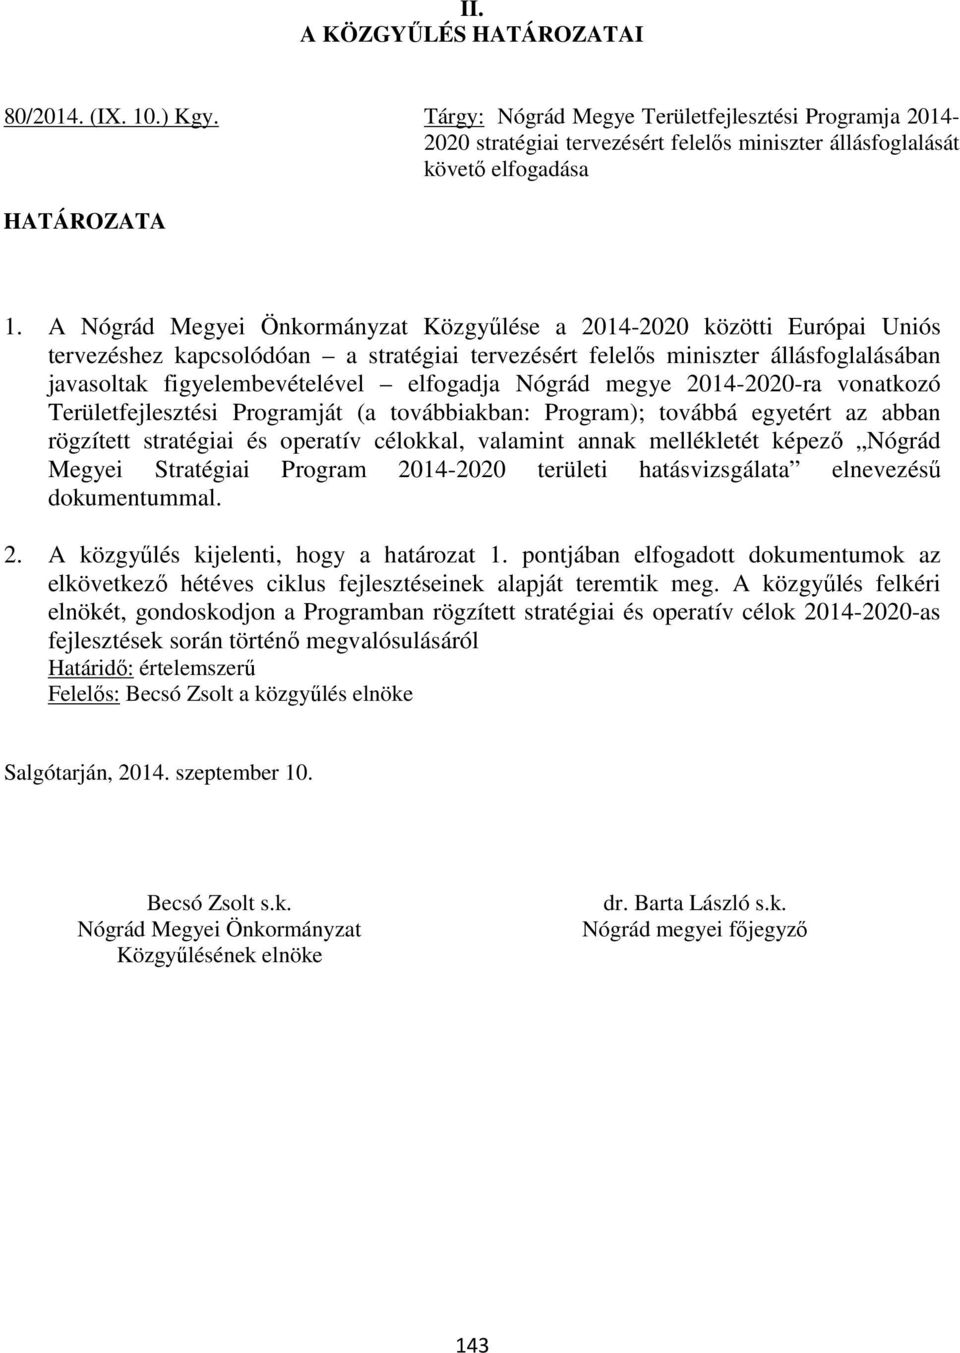 elfogadja Nógrád megye 2014-2020-ra vonatkozó Területfejlesztési Programját (a továbbiakban: Program); továbbá egyetért az abban rögzített stratégiai és operatív célokkal, valamint annak mellékletét